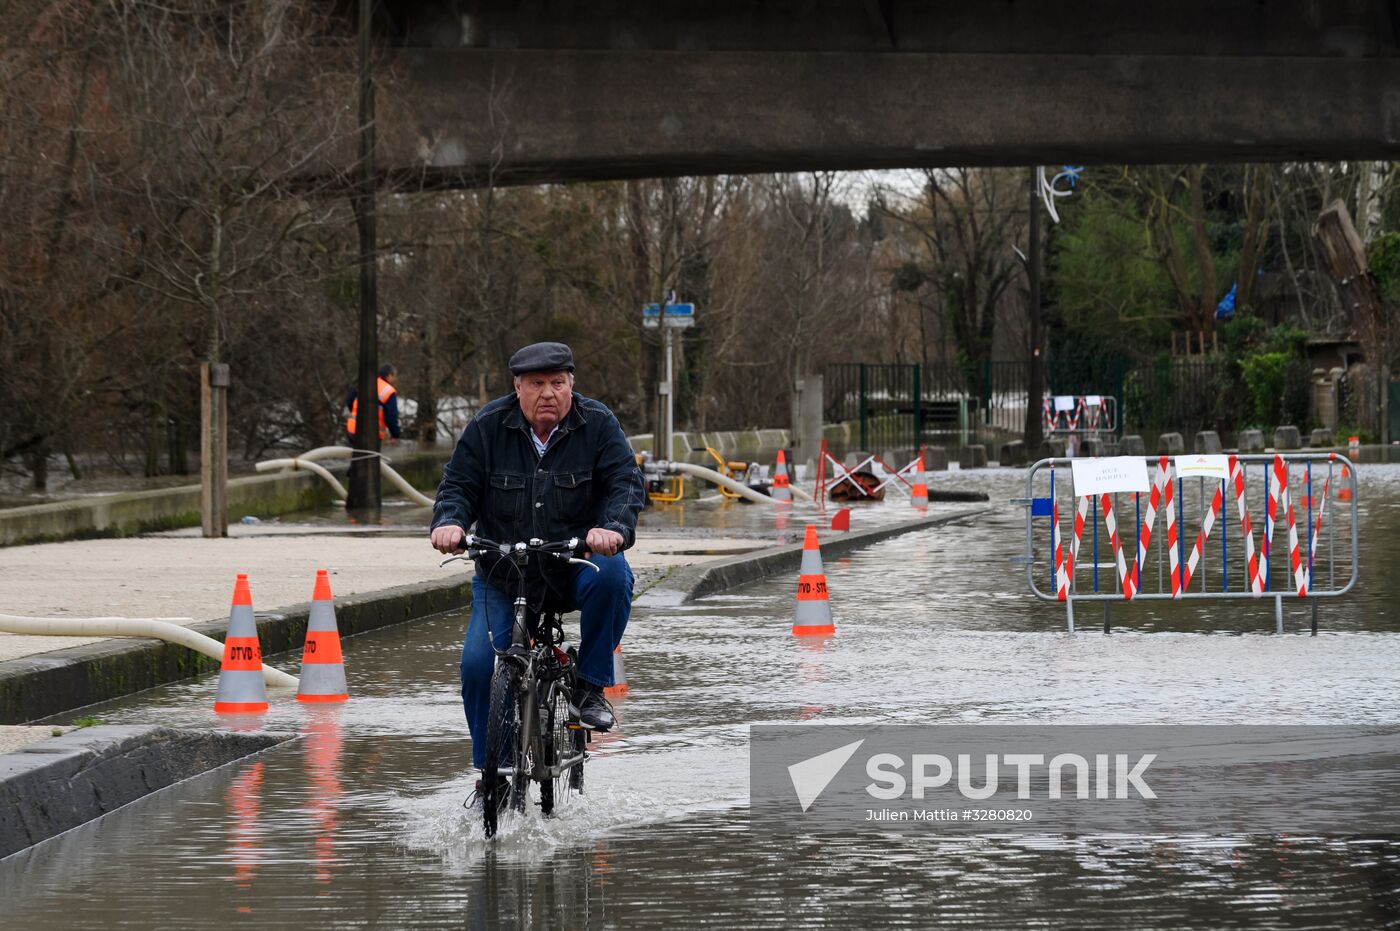 Flooding in Paris